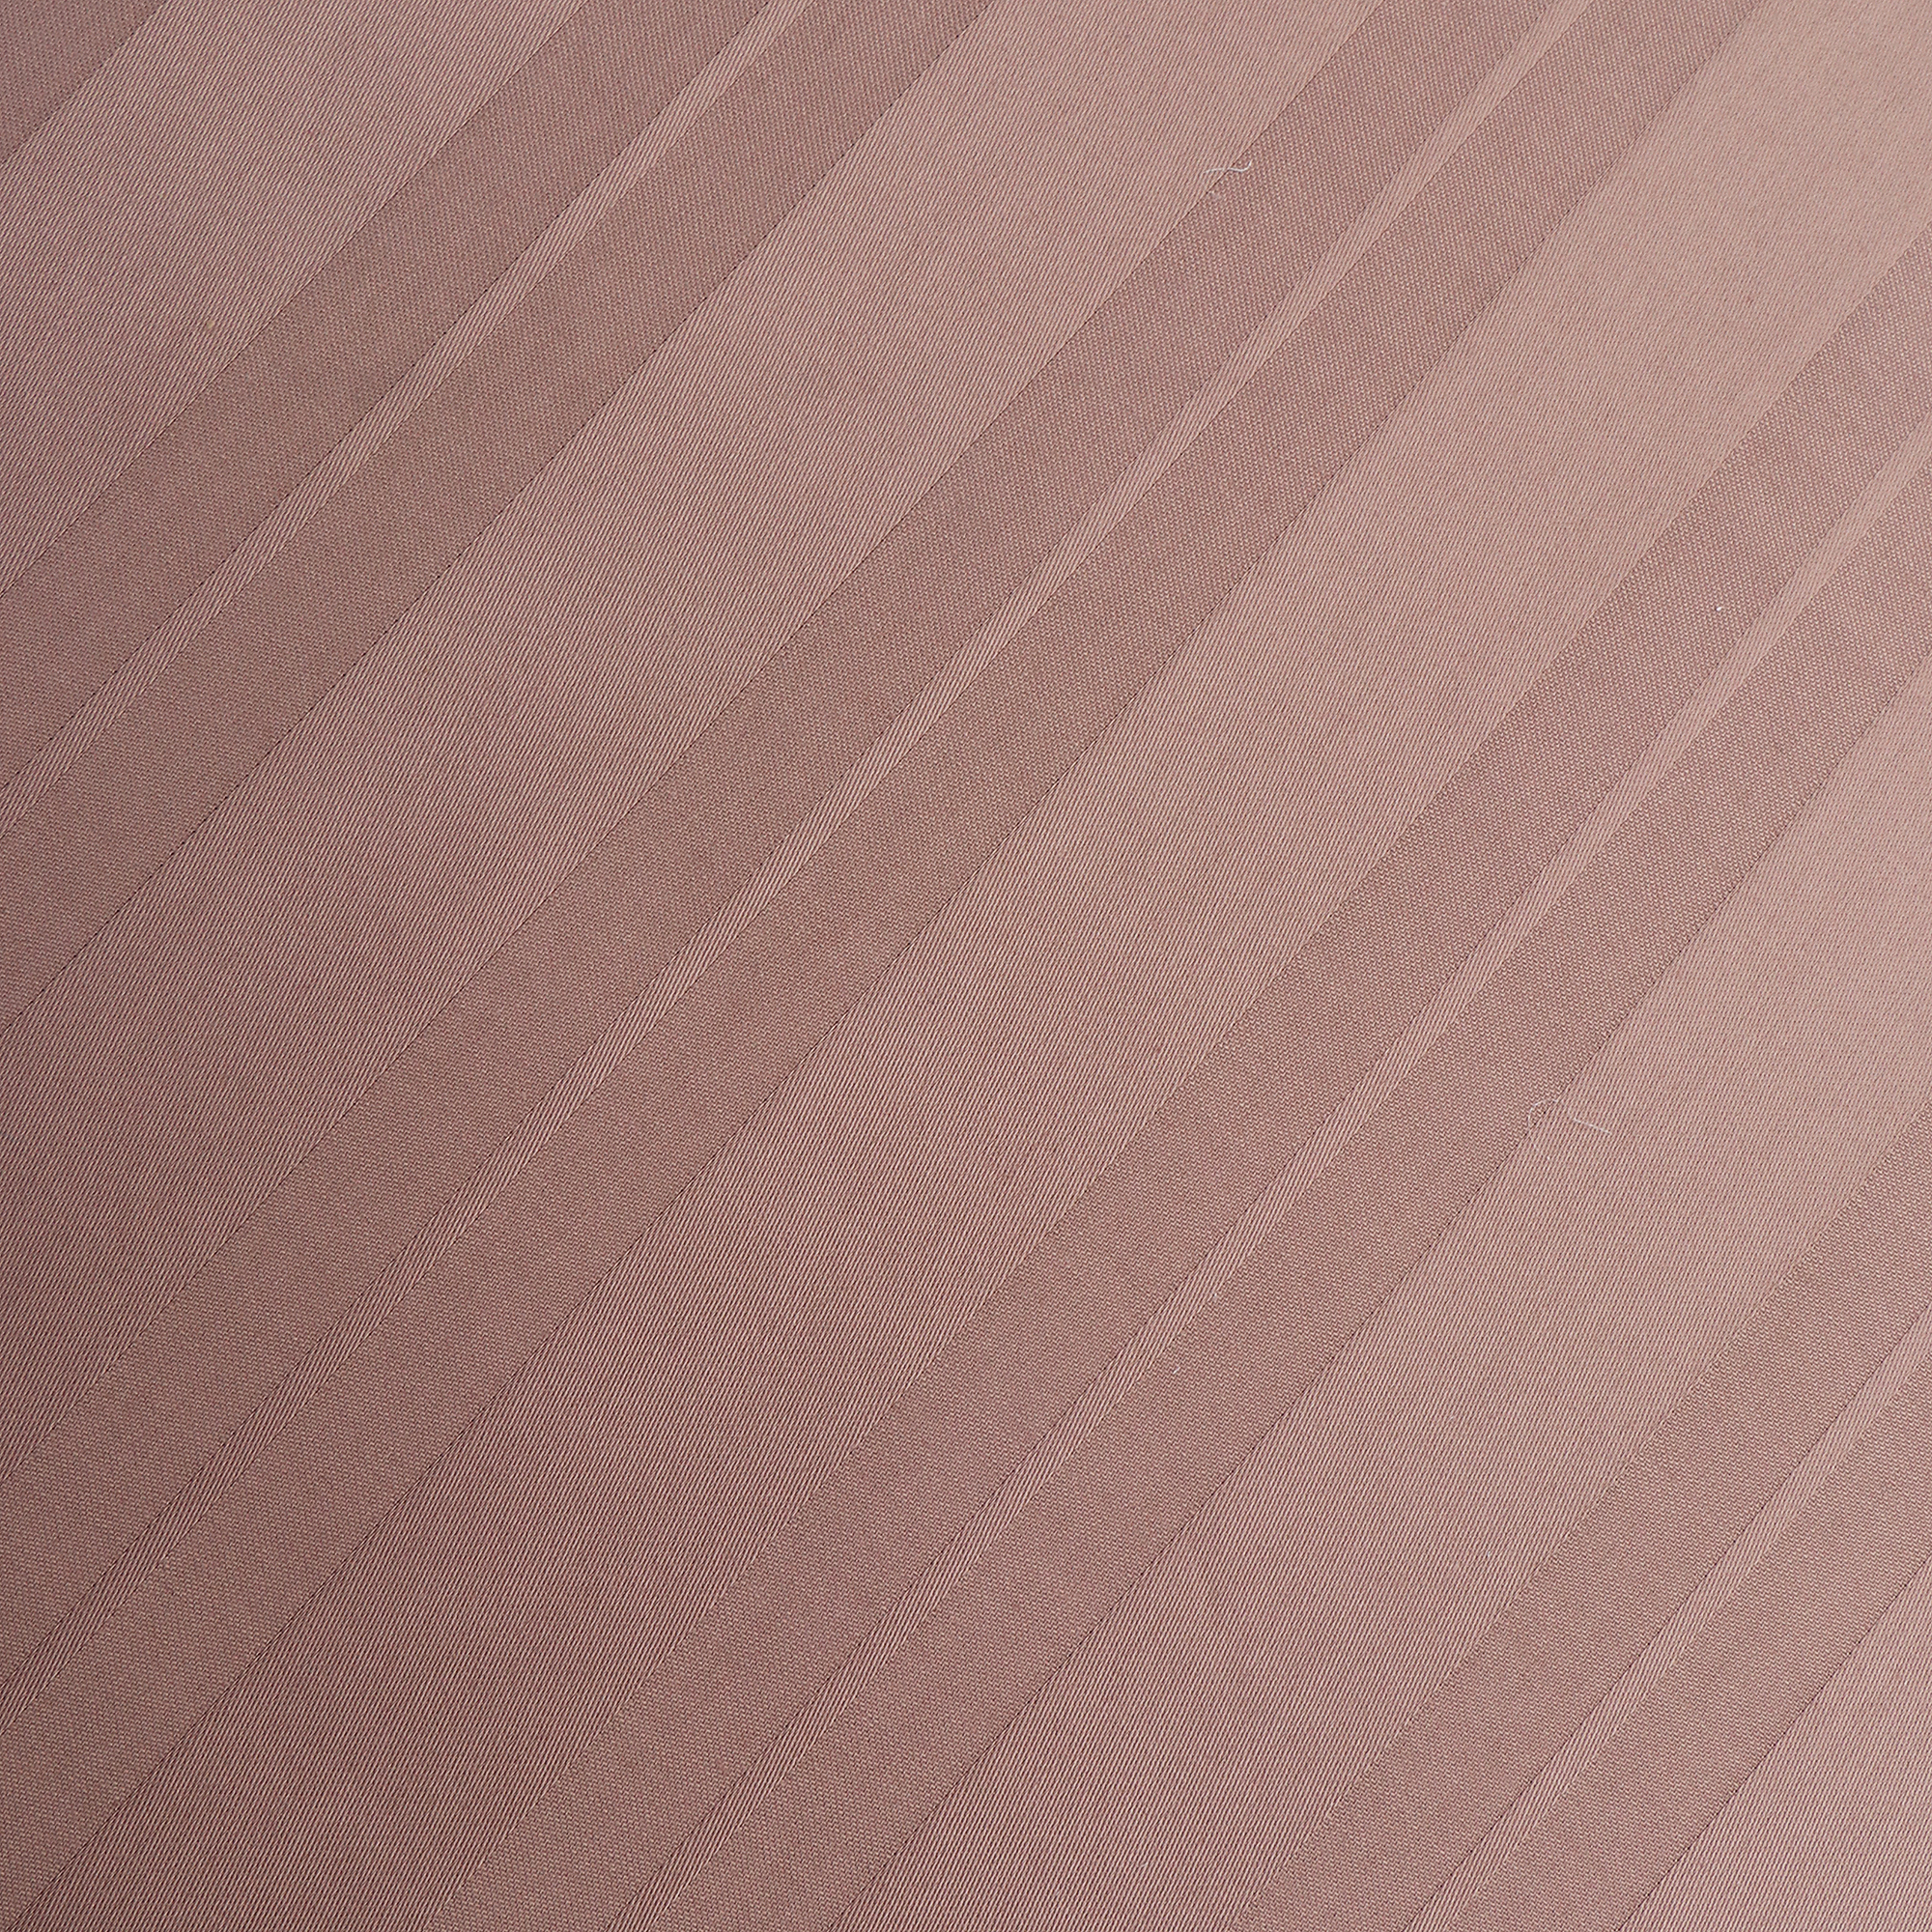 Постельный комплект Medsleep краусс бежевый 145x200/180x220/50x70-2, размер Полуторный - фото 2